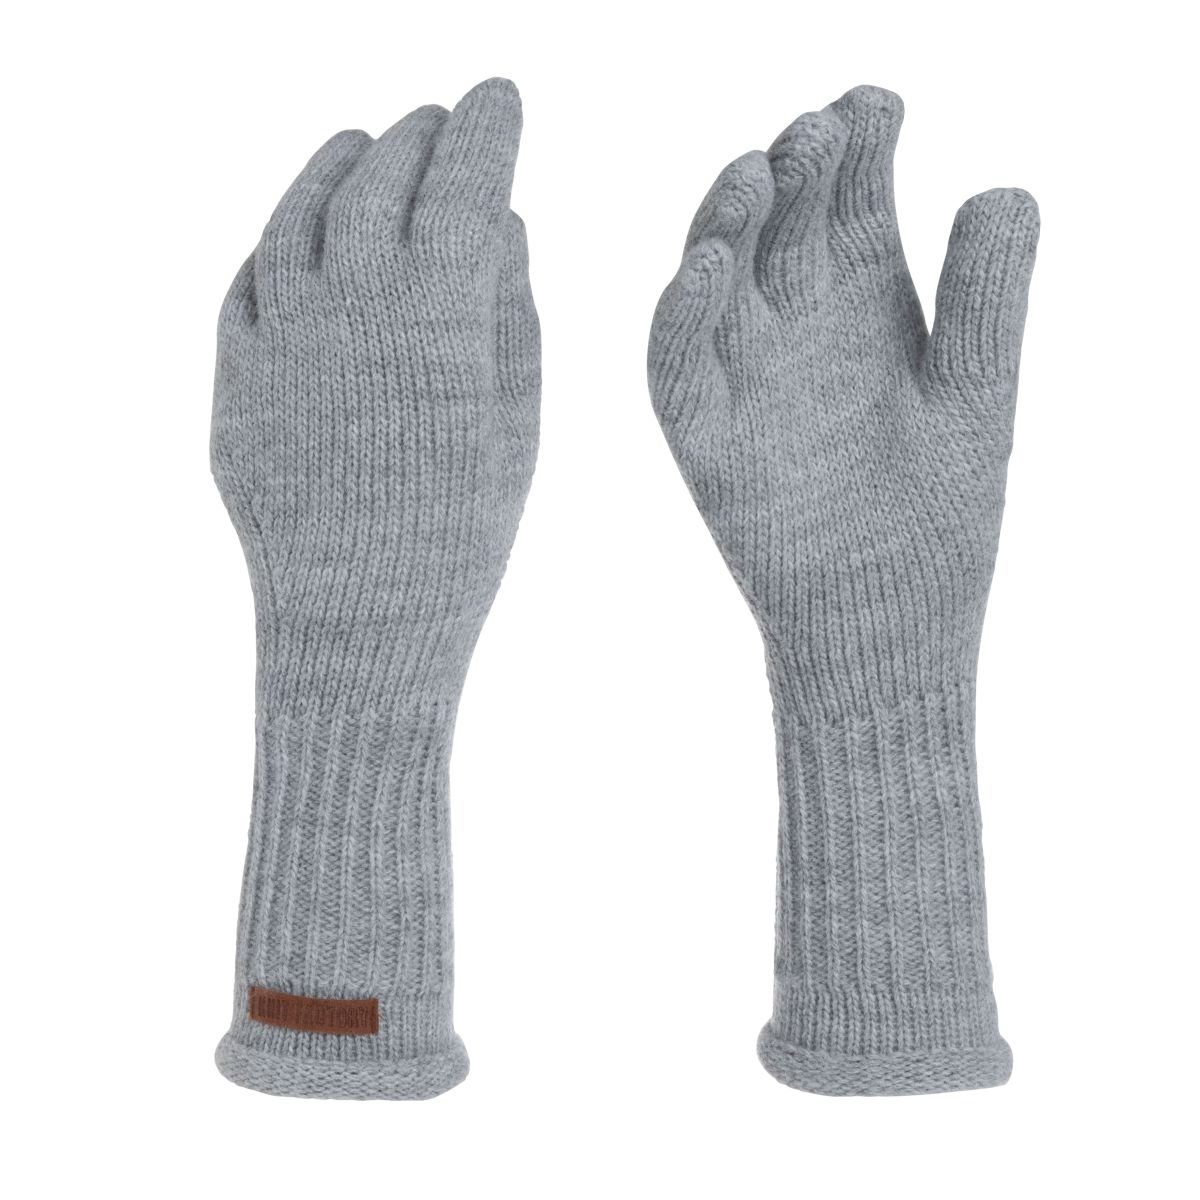 Size Strickhandschuhe Handstulpen Glatt Factory Grau Handschuhe Handschuhe ihne Finger Lana Handschuhe One Knit